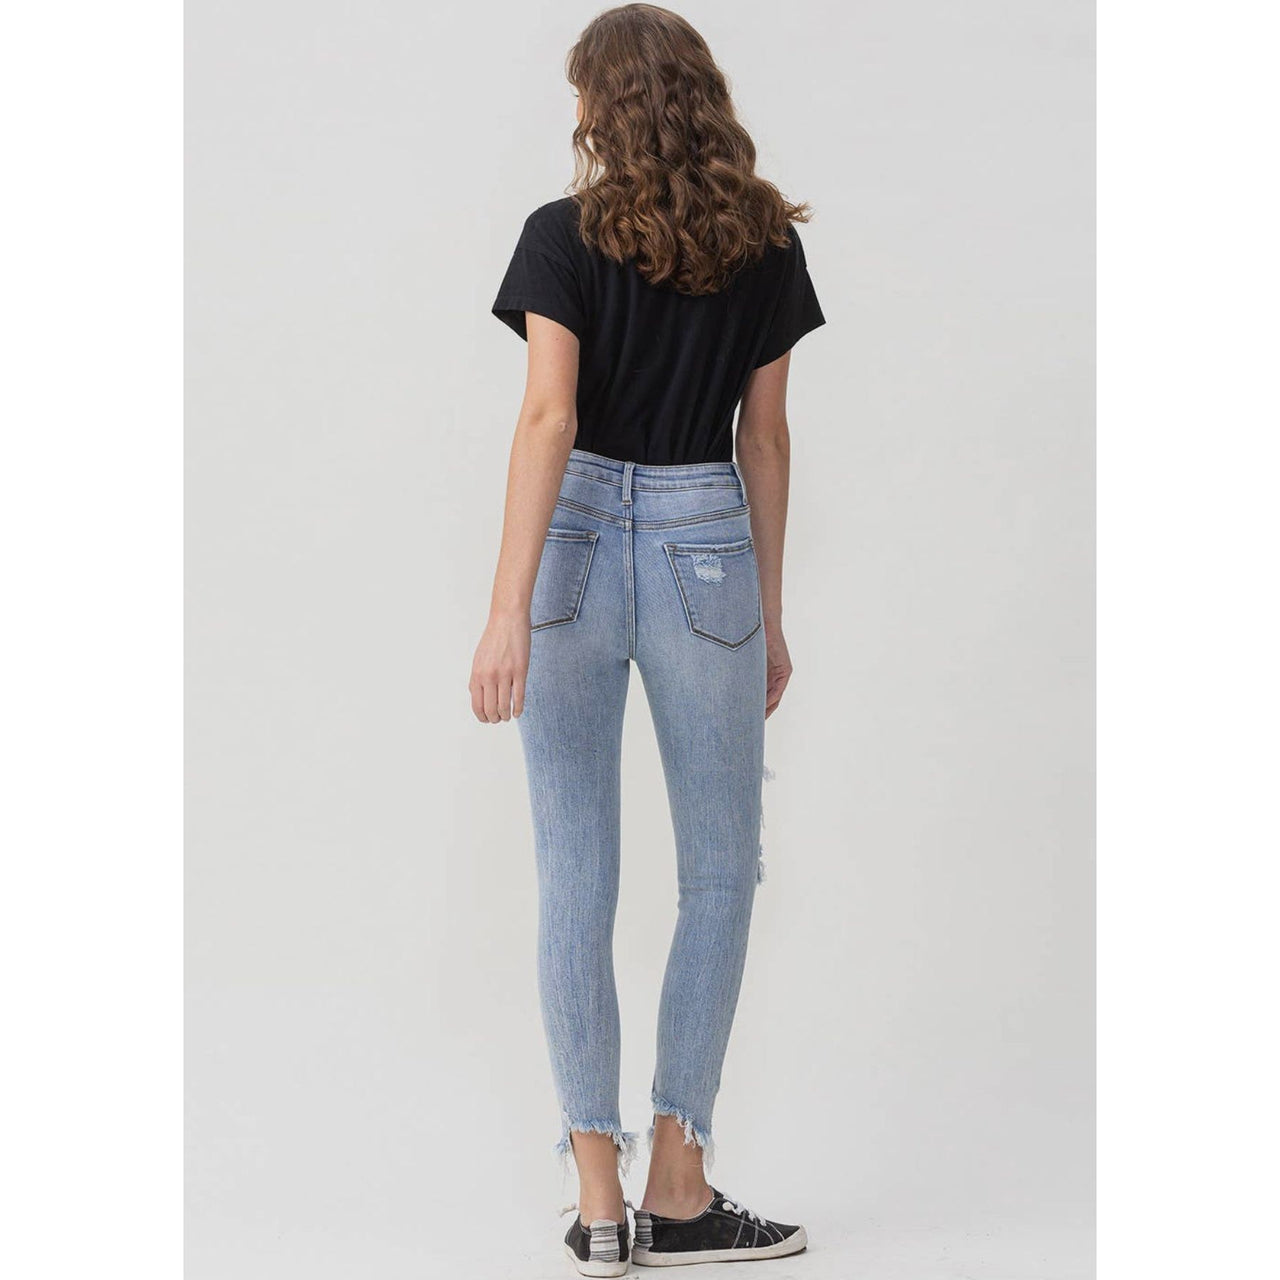 Flatteringly High Rise Skinny Denim Women's Jeans Lovervet   